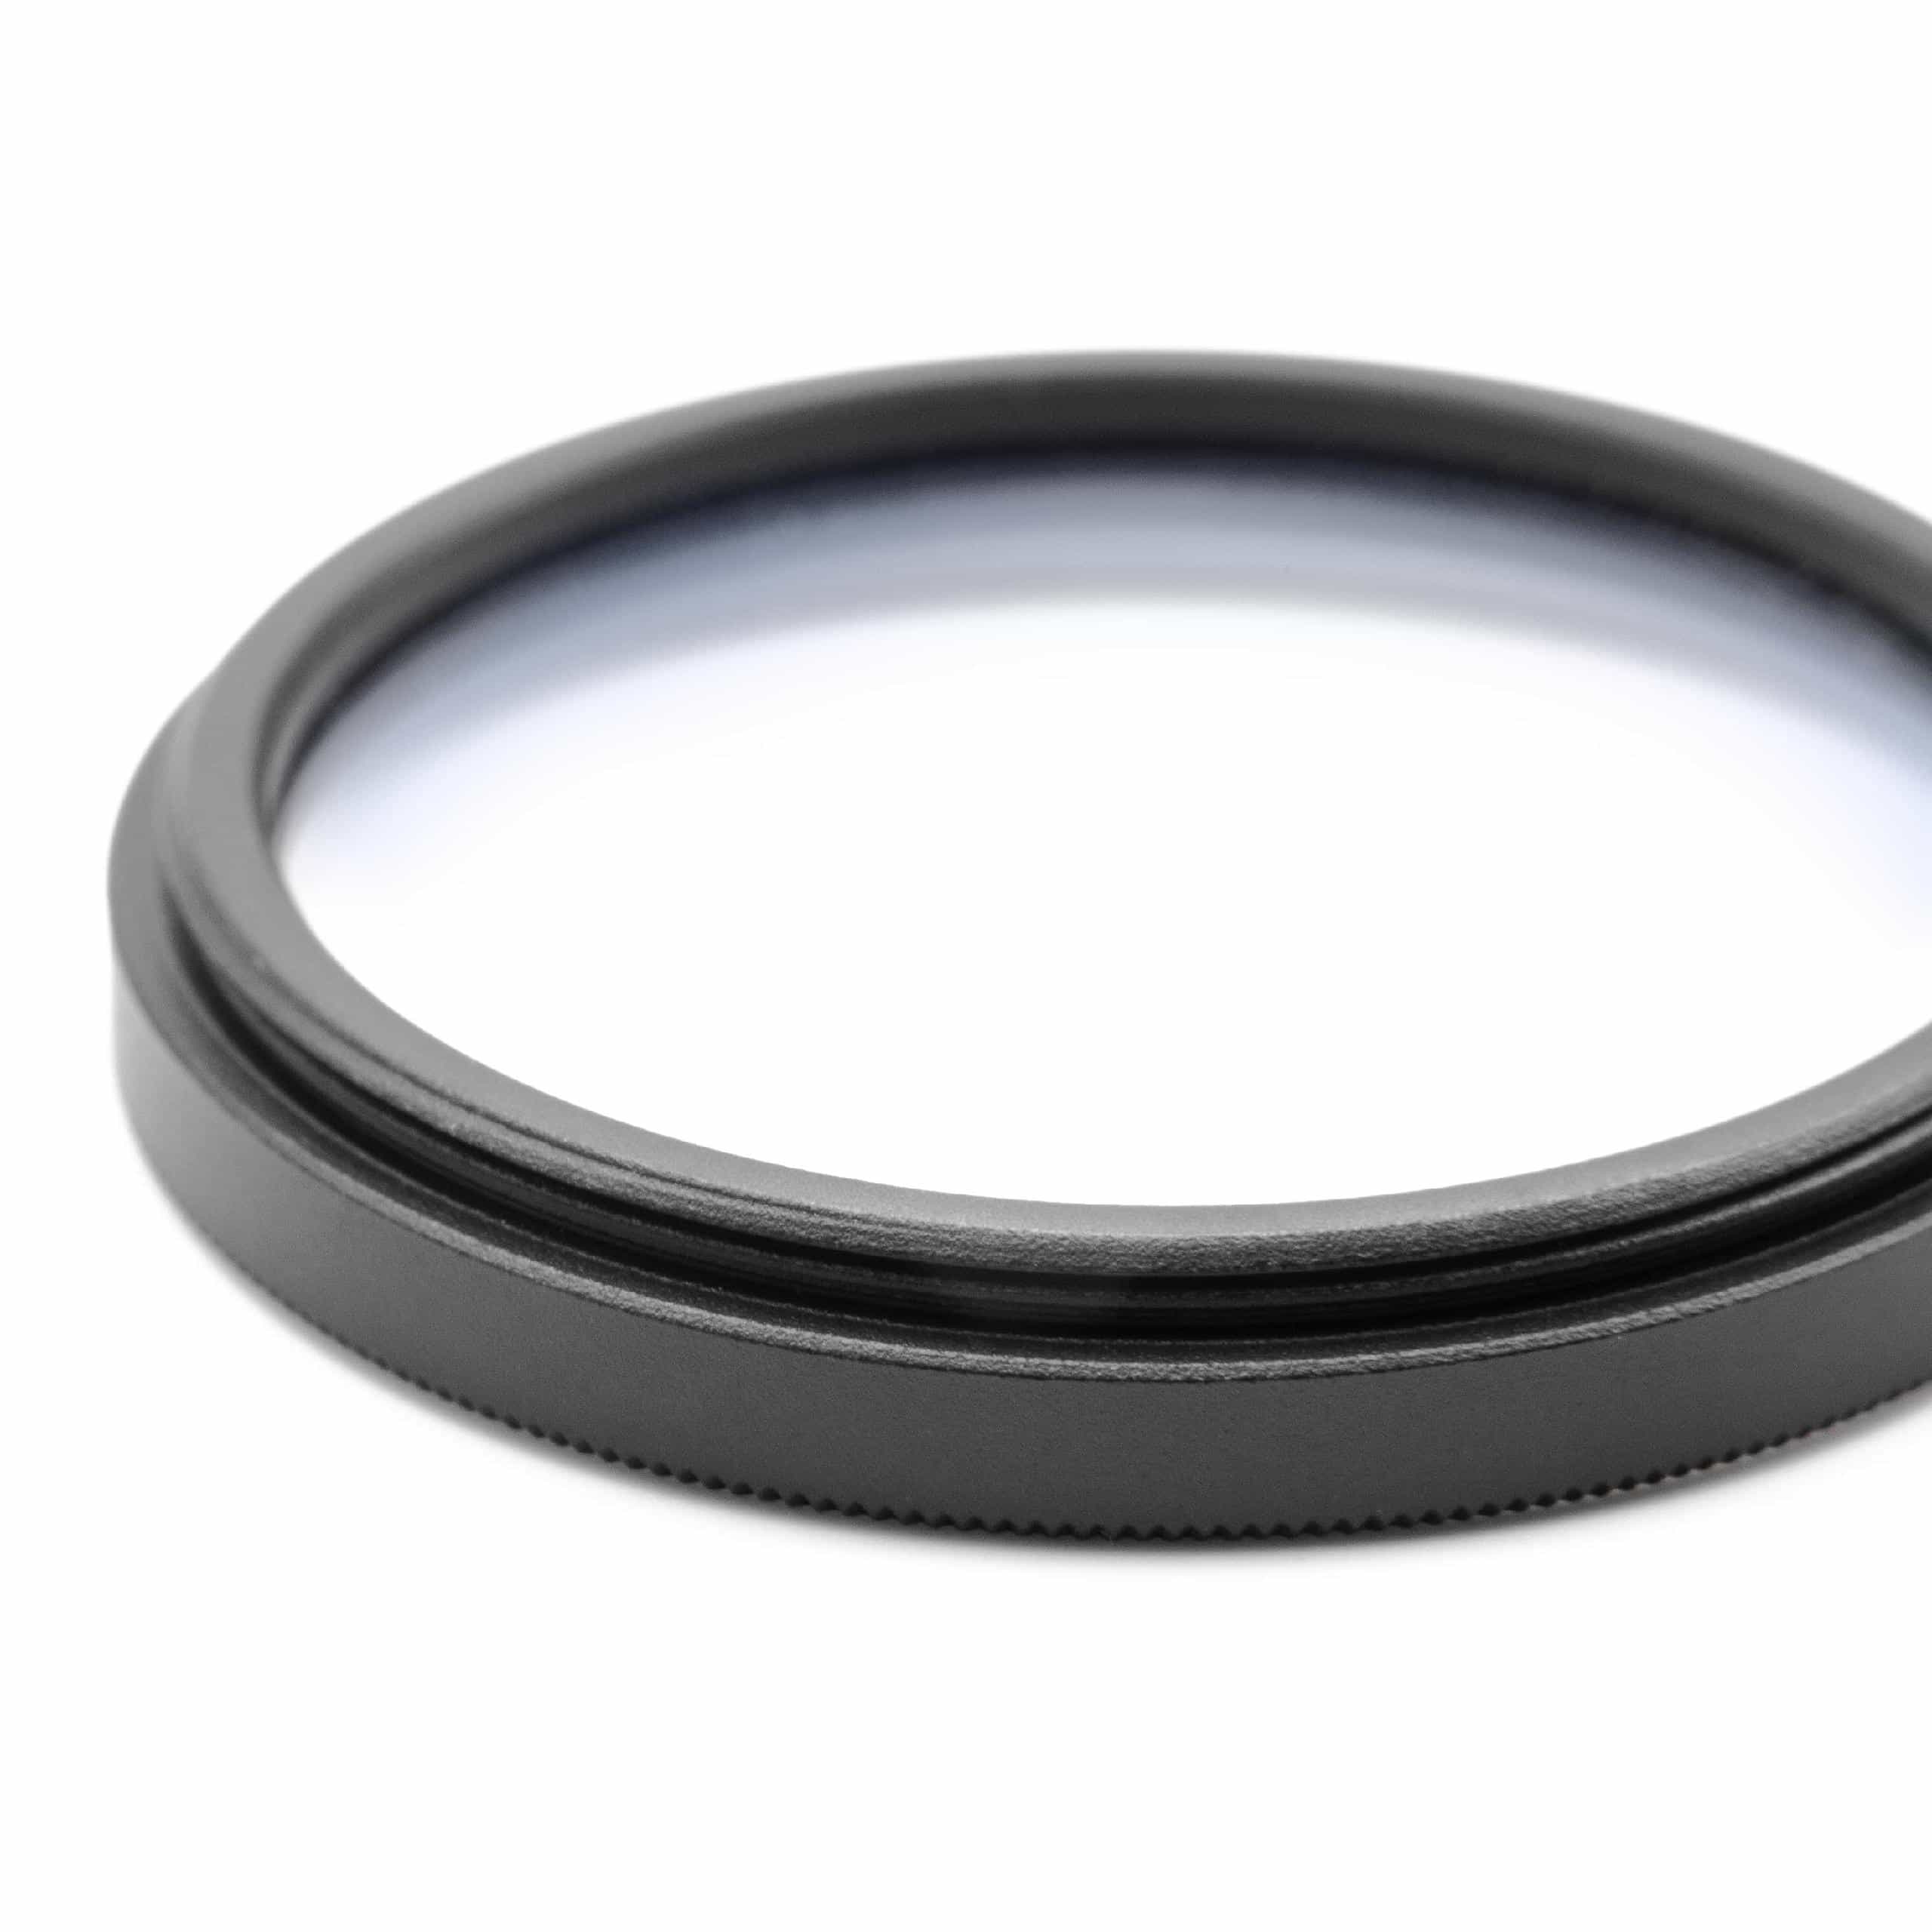 Filtr dyfuzyjny 43mm na obiektyw do różnych aparatów - filtr soft focus